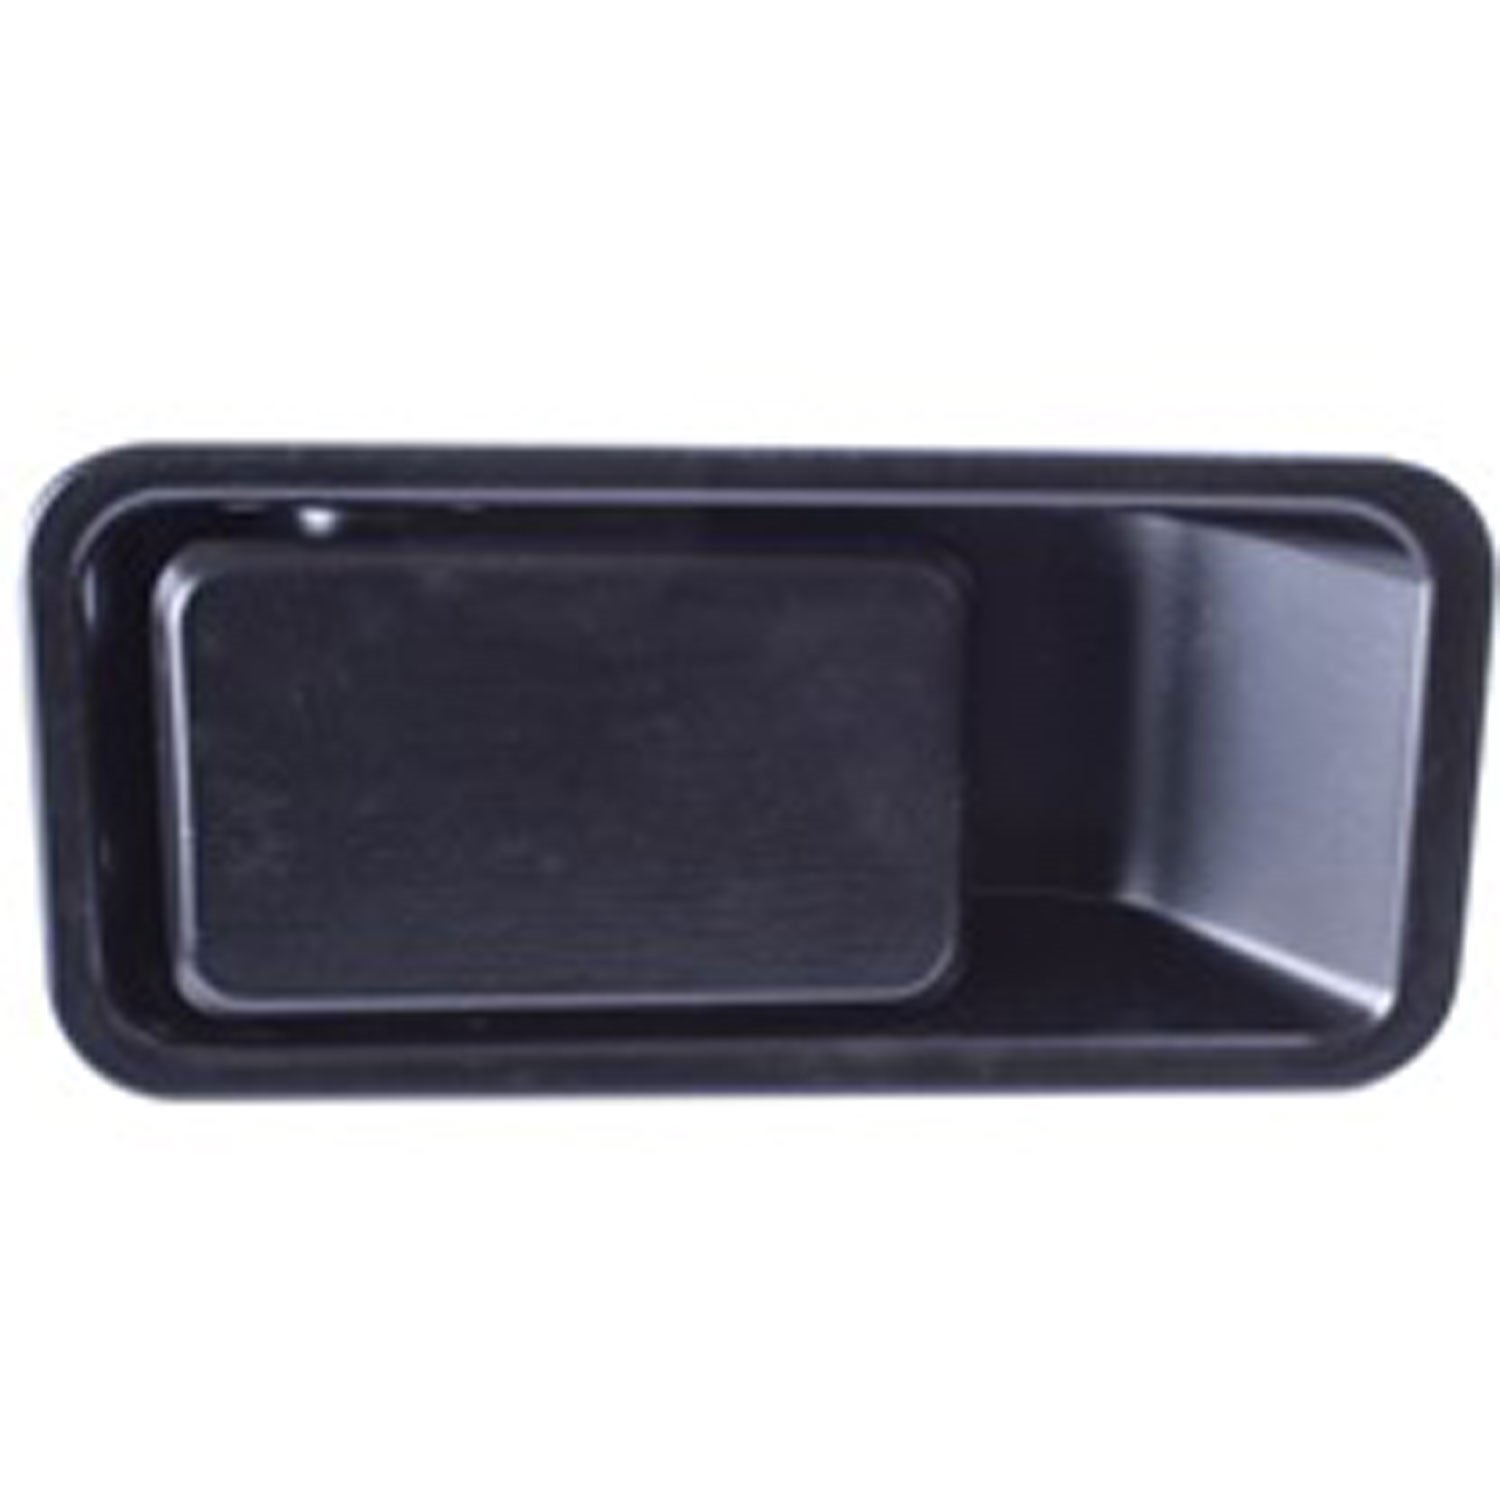 This black exterior door handle from Omix-ADA fits the left half door on 87-06 Jeep Wrangler.